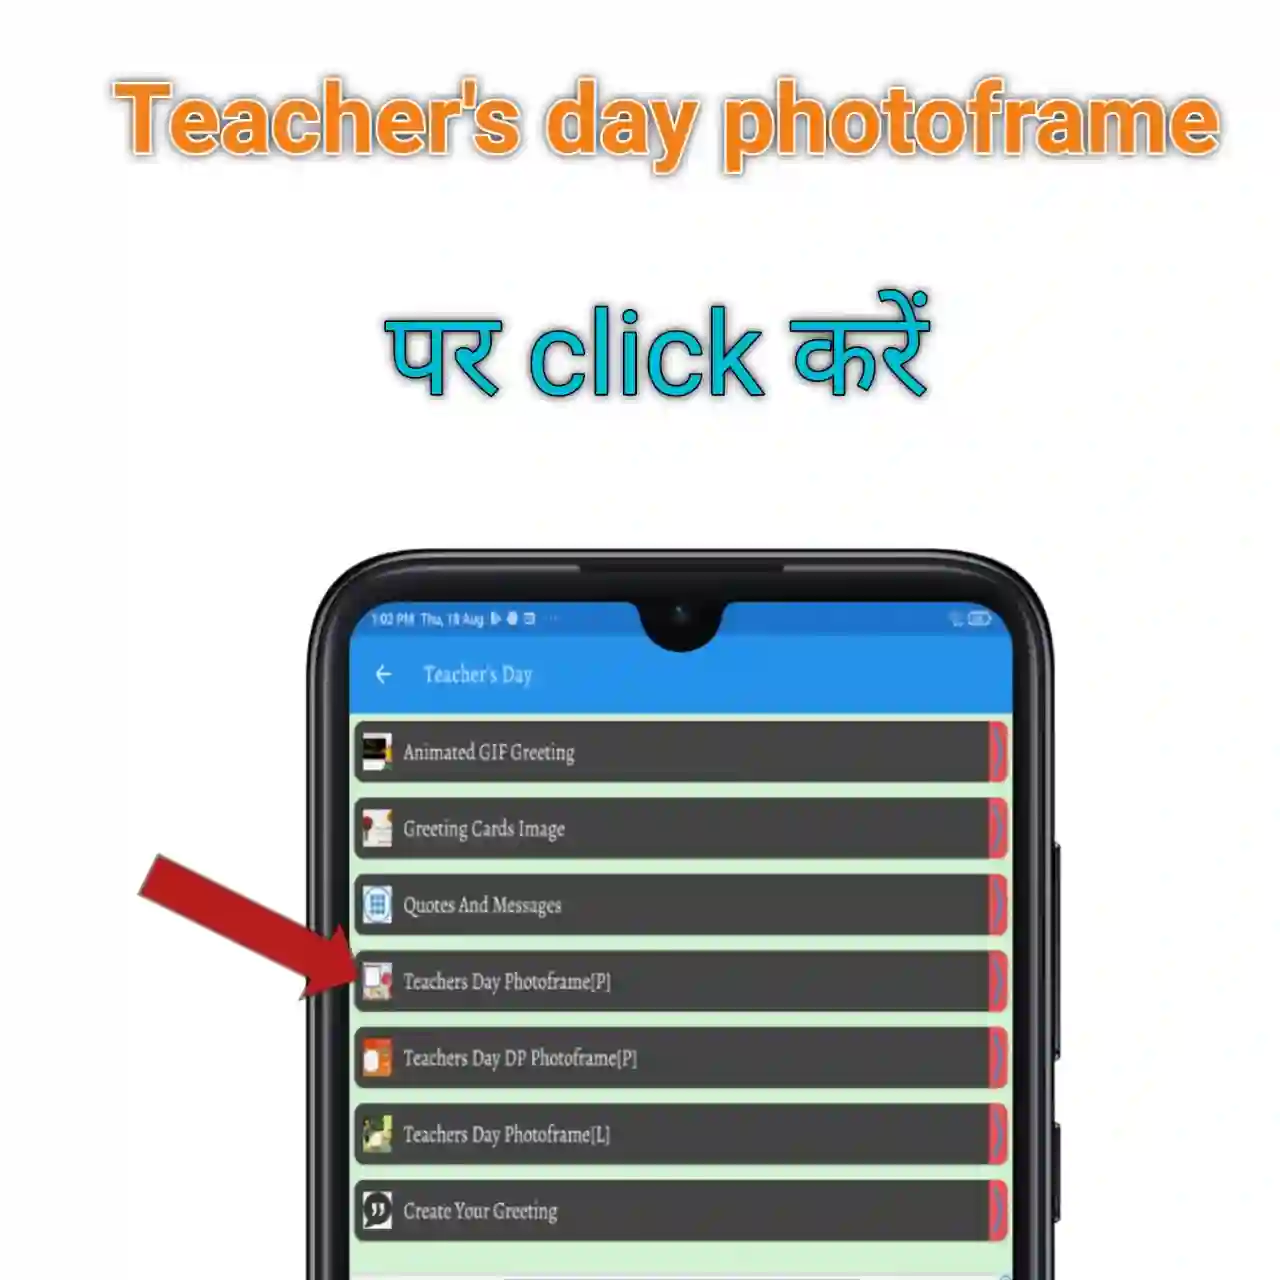 Teachers day photoframe editing 